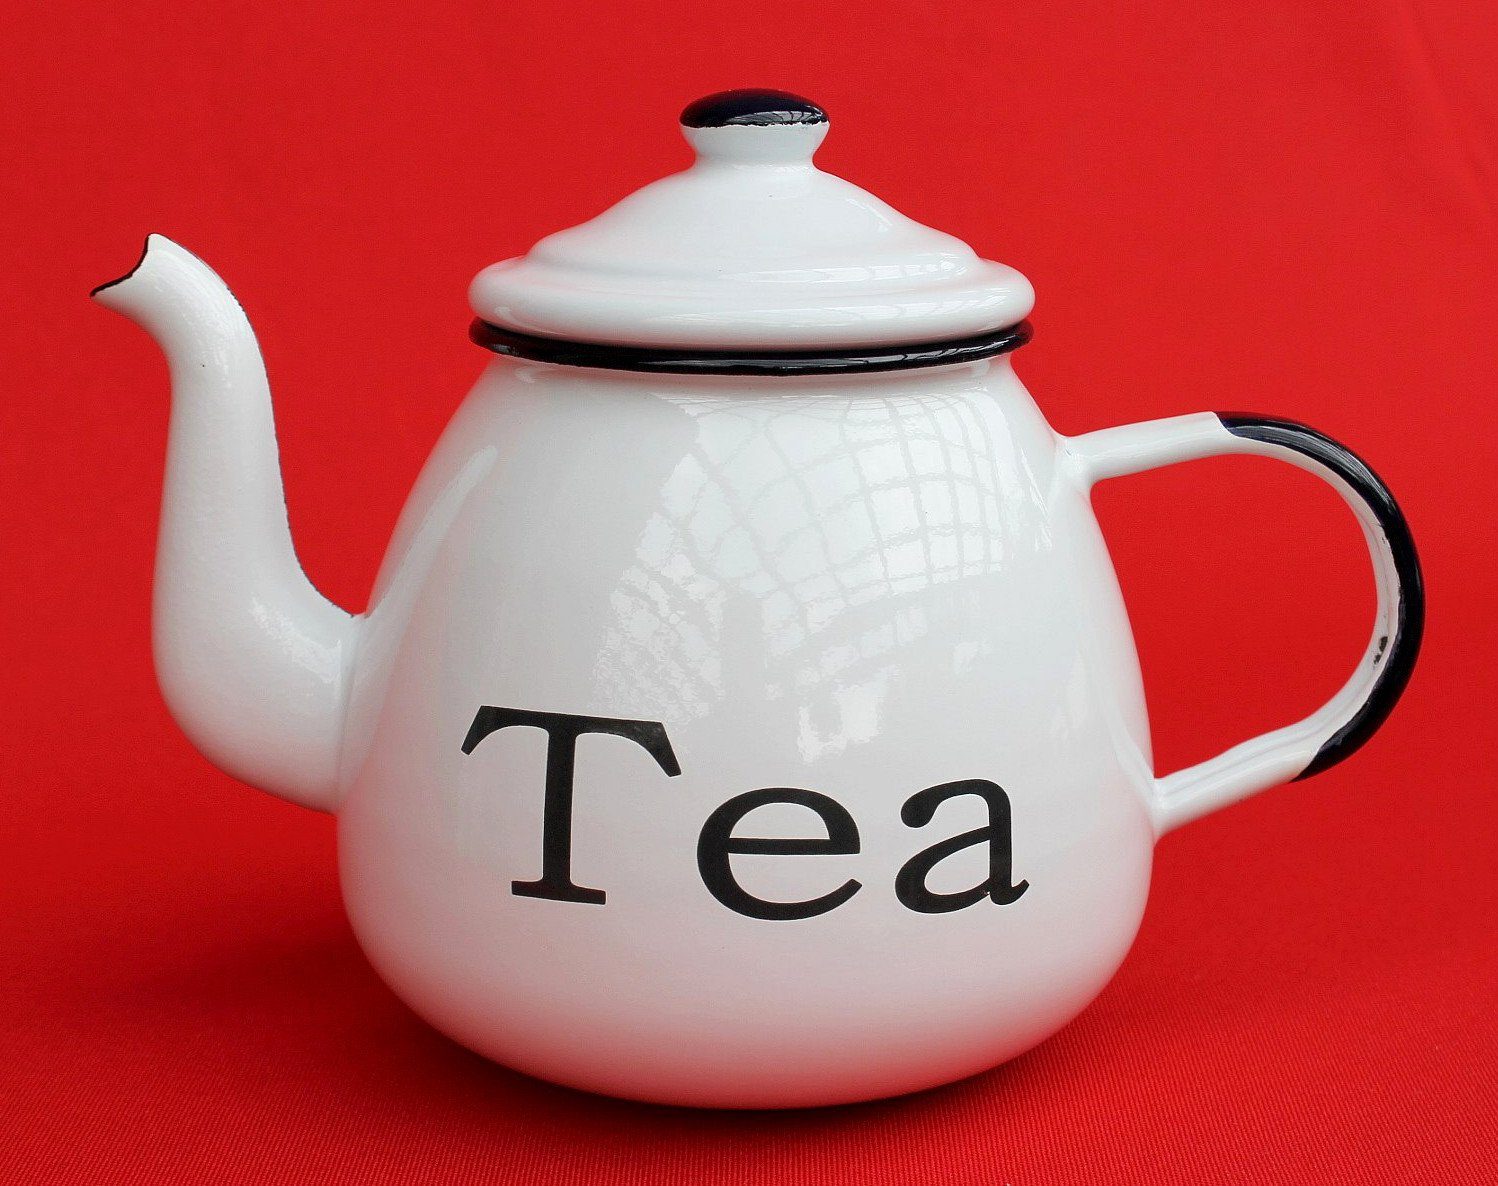 Sie können ein neues bekommen DanDiBo Teekanne Teekanne 582AB Kanne Emaille, emailliert Weiß Kaffeekanne L 0,85 0,75 l TEA 14 Wasserkanne cm